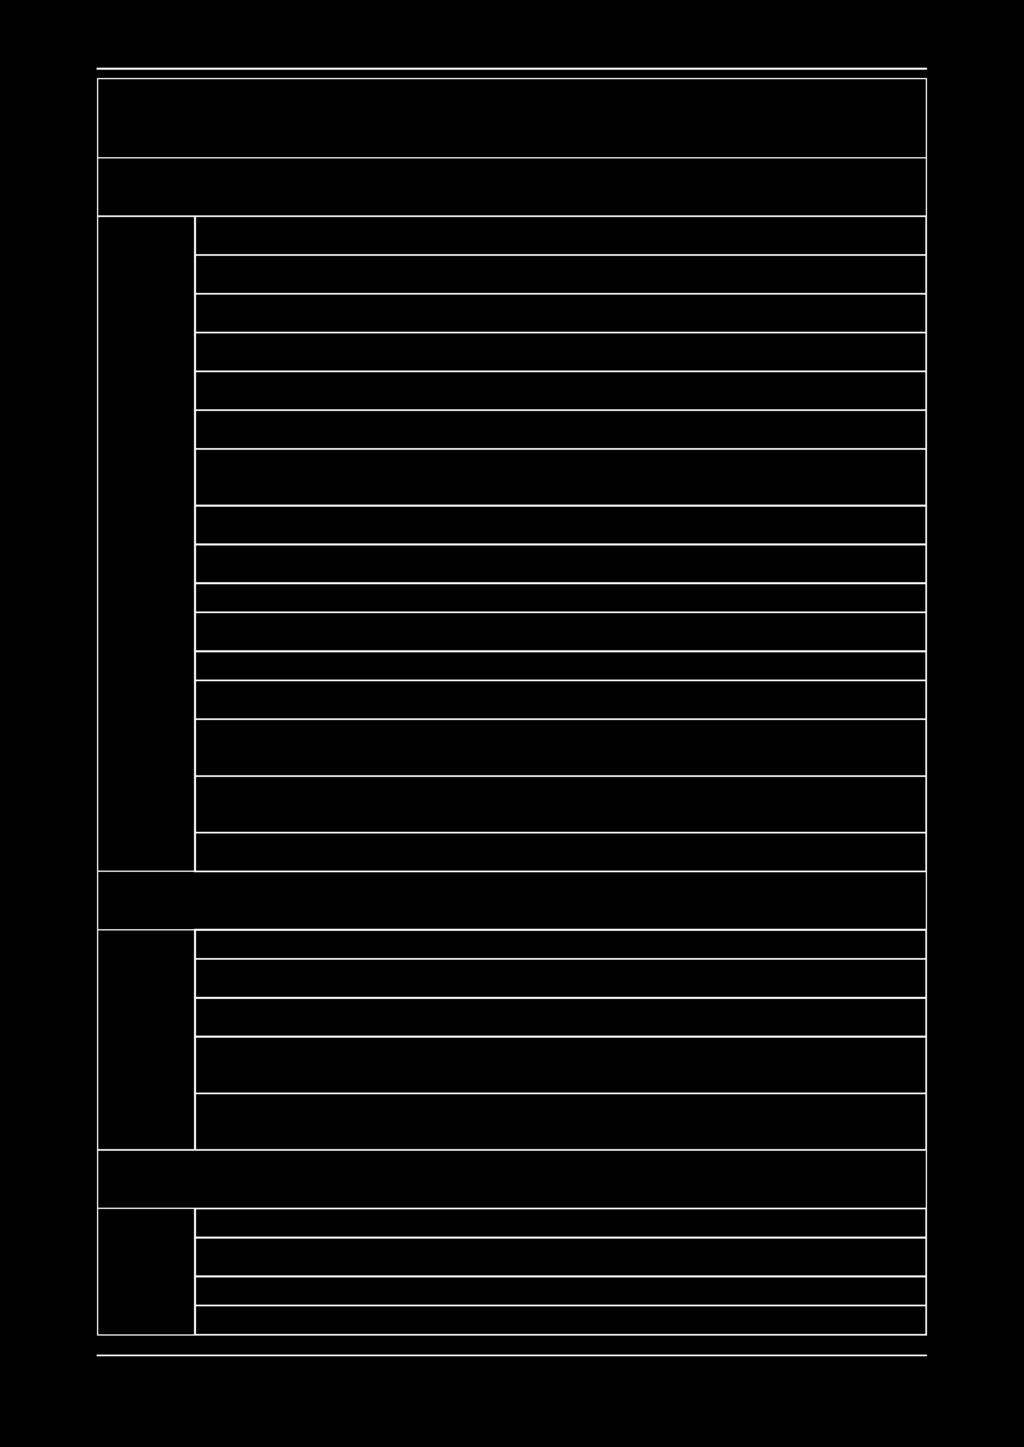 Περίφραξη των περάτων πλακών με προστατευτικό δίχτυ, σε ύψος τουλάχιστον μ (ΠΔ 0/, ΠΔ /0) Περίφραξη των κλιμακοστασίων με διπλή σανίδα σε ύψος μ από το πάτημα, μονή σανίδα σε ύψος 0, μ και σοβατεπί